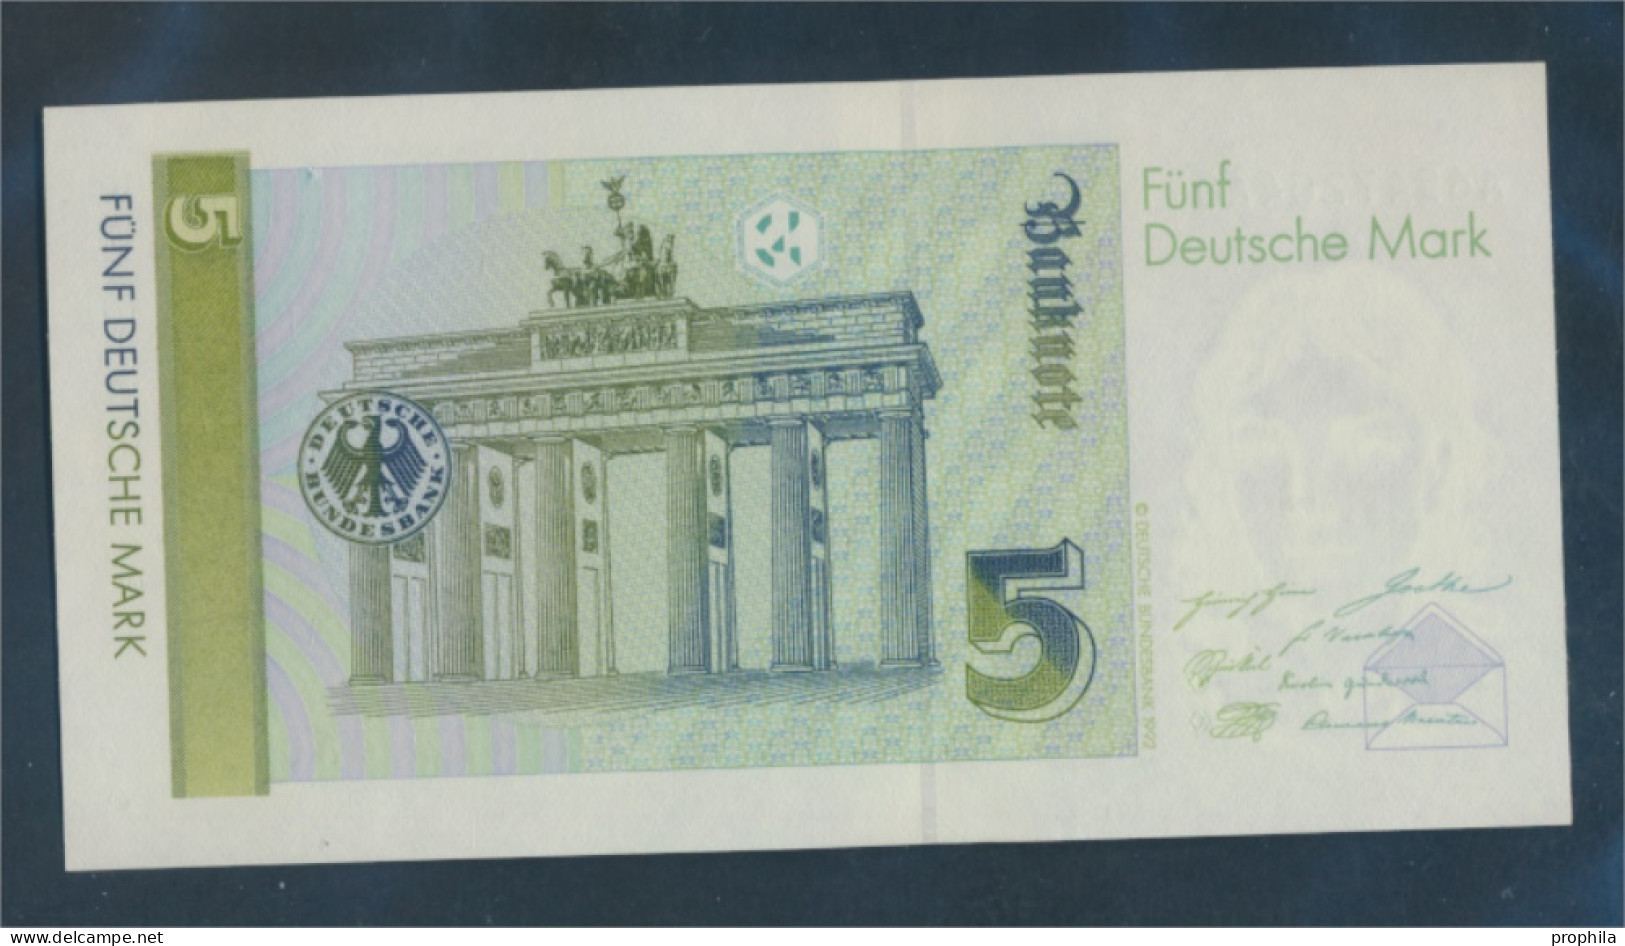 BRD Rosenbg: 296a, Serien: A Bankfrisch 1991 5 Deutsche Mark (10288347 - 5 DM